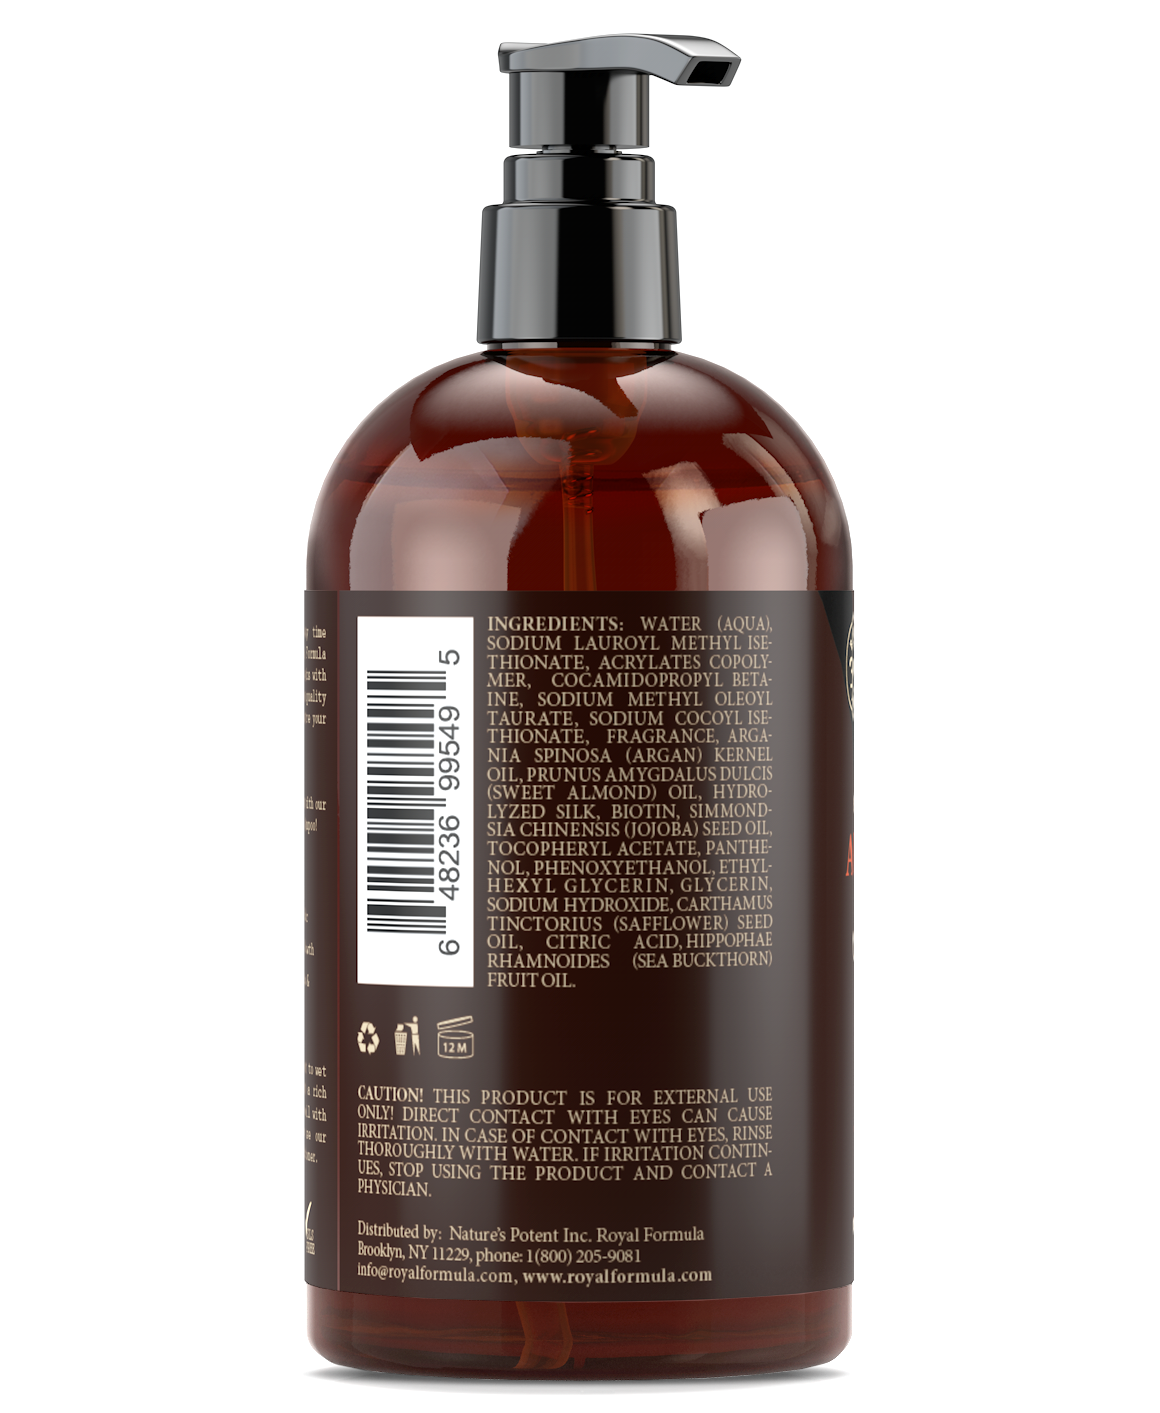 Argan Oil Shampoo Infused with Biotin & Hydrolyzed Silk 16 oz/473 ml